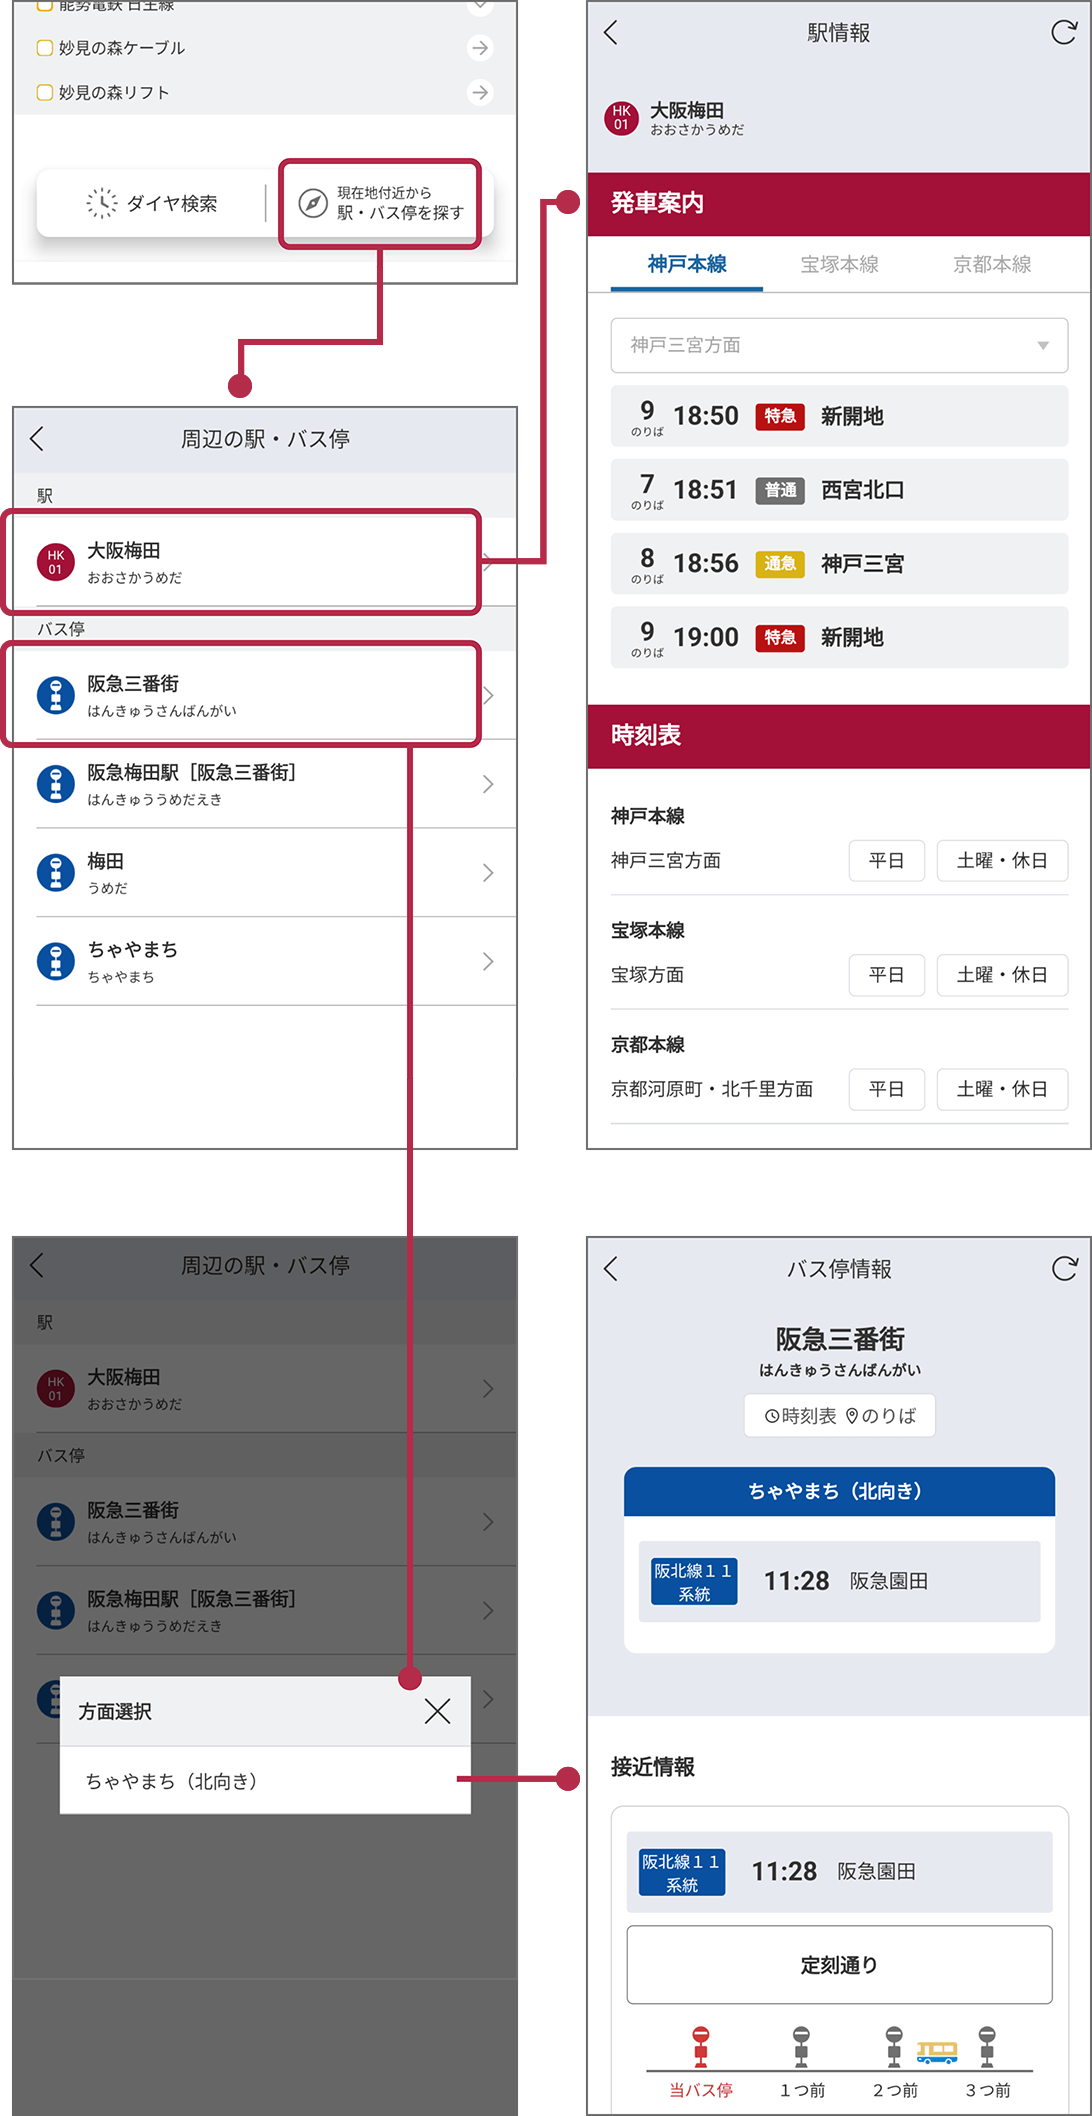 スマートフォンのGPS機能を活用して、今いる場所付近の阪急電鉄、能勢電鉄の駅、阪急バスのバス停を検索できます。